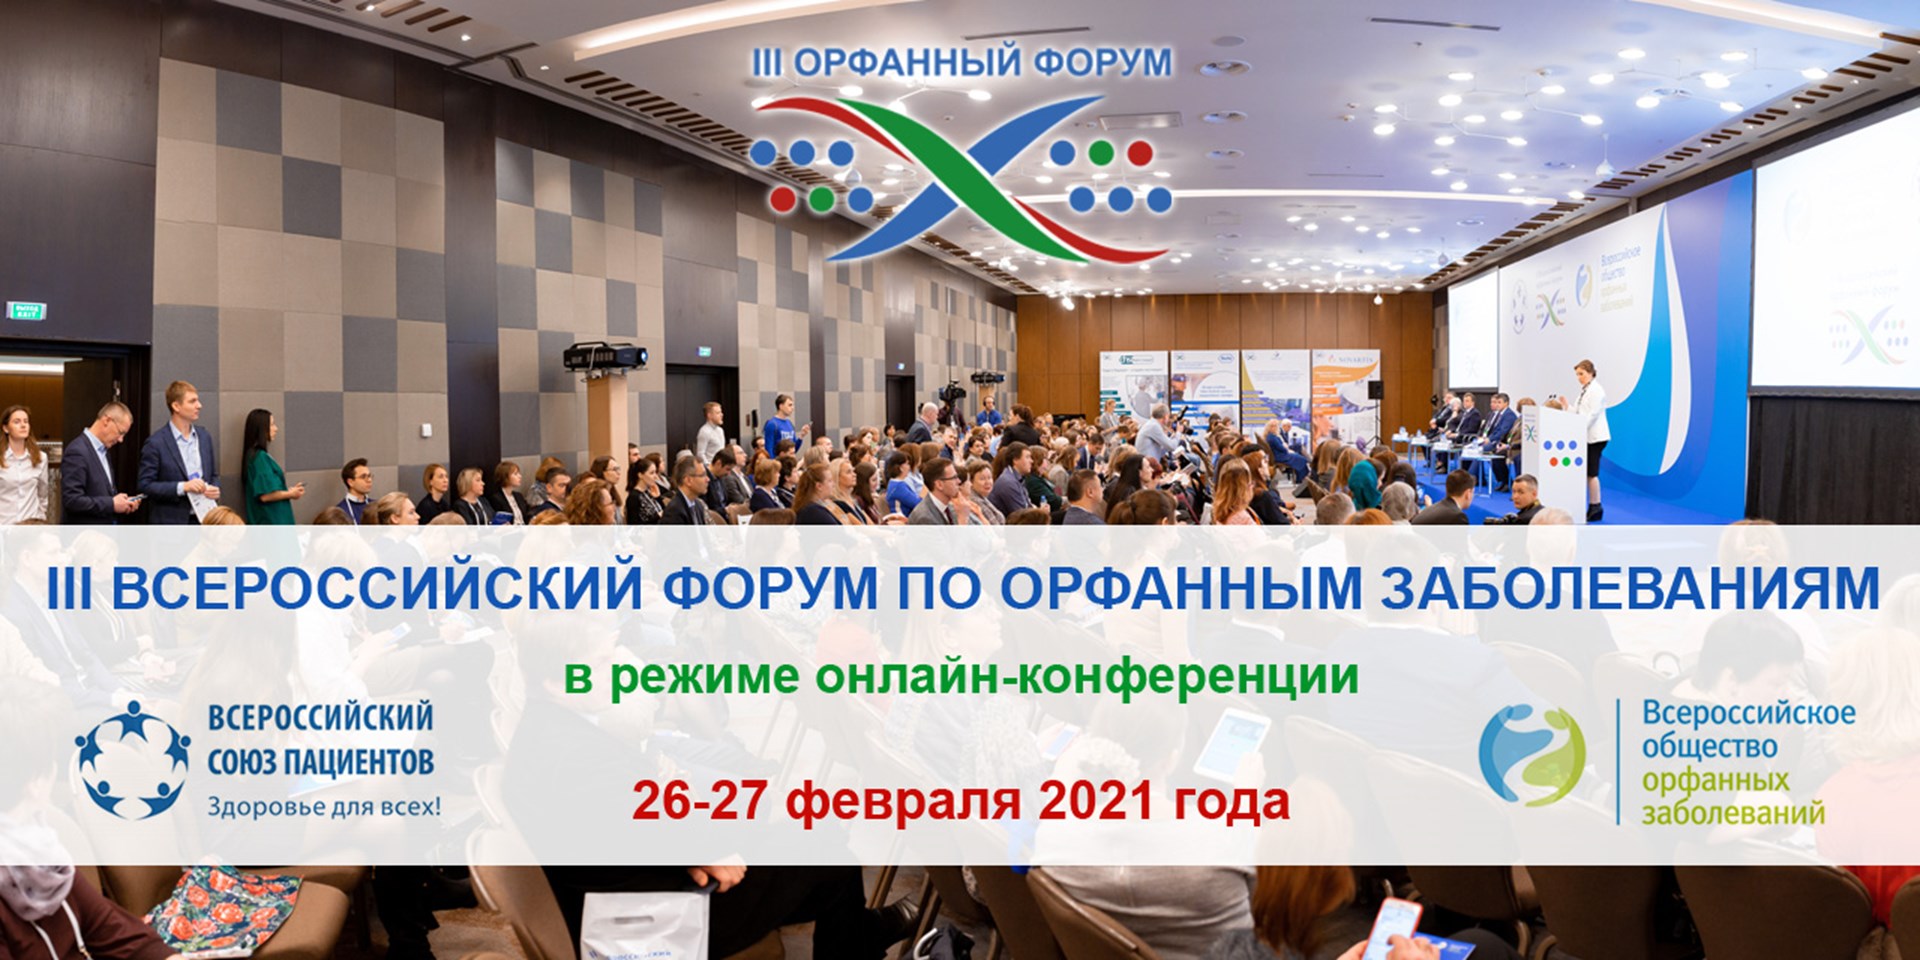 Москва. Завтра начнет свою работу III Всероссийский форум по орфанным заболеваниям